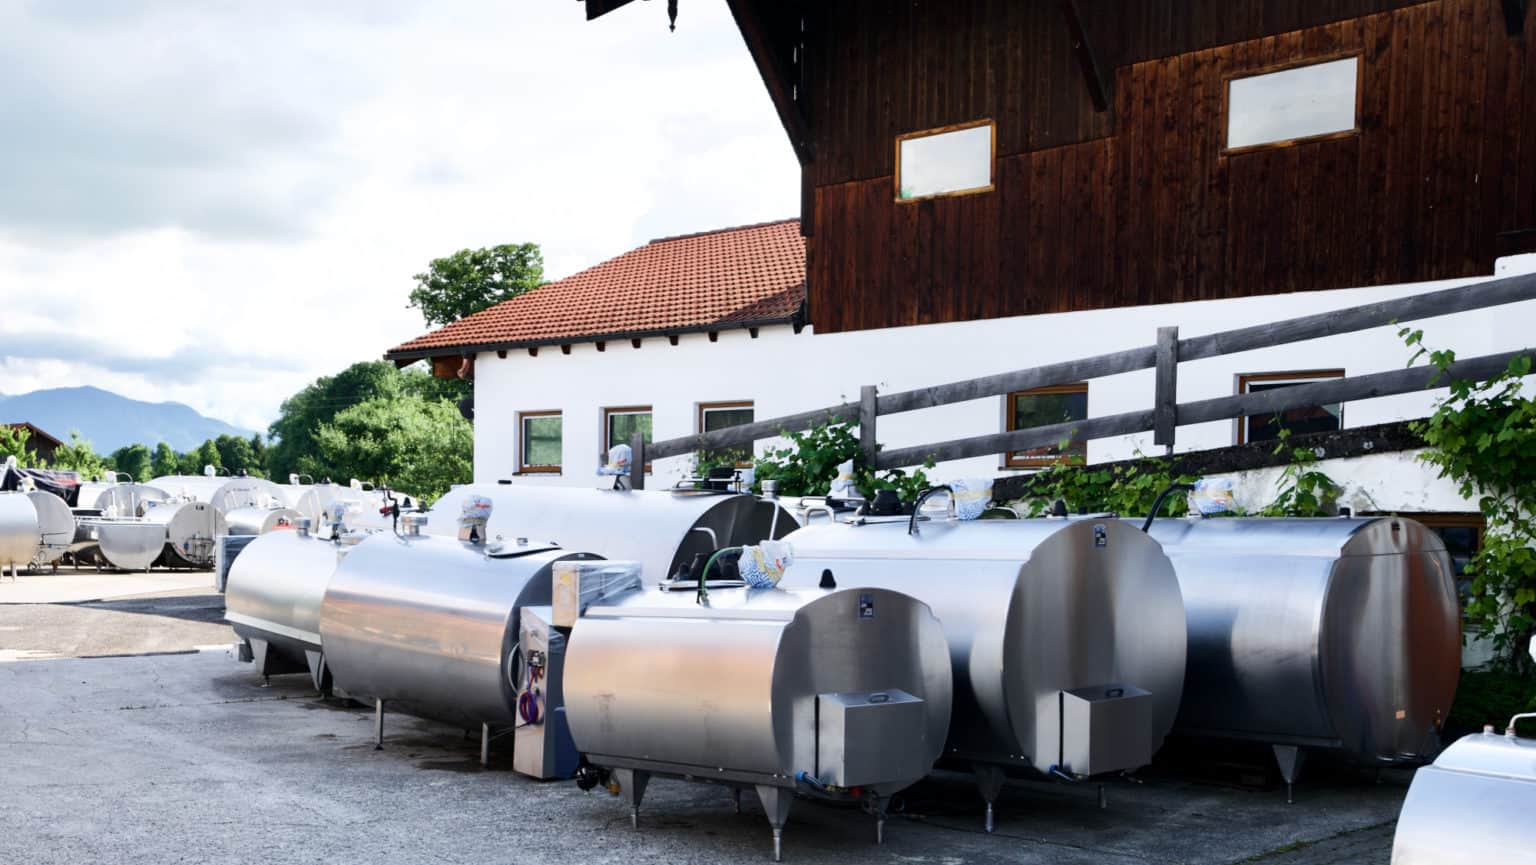 Alois Huber Landtechnik GmbH - Gebrauchte Milchkühltanks und Landmaschinen